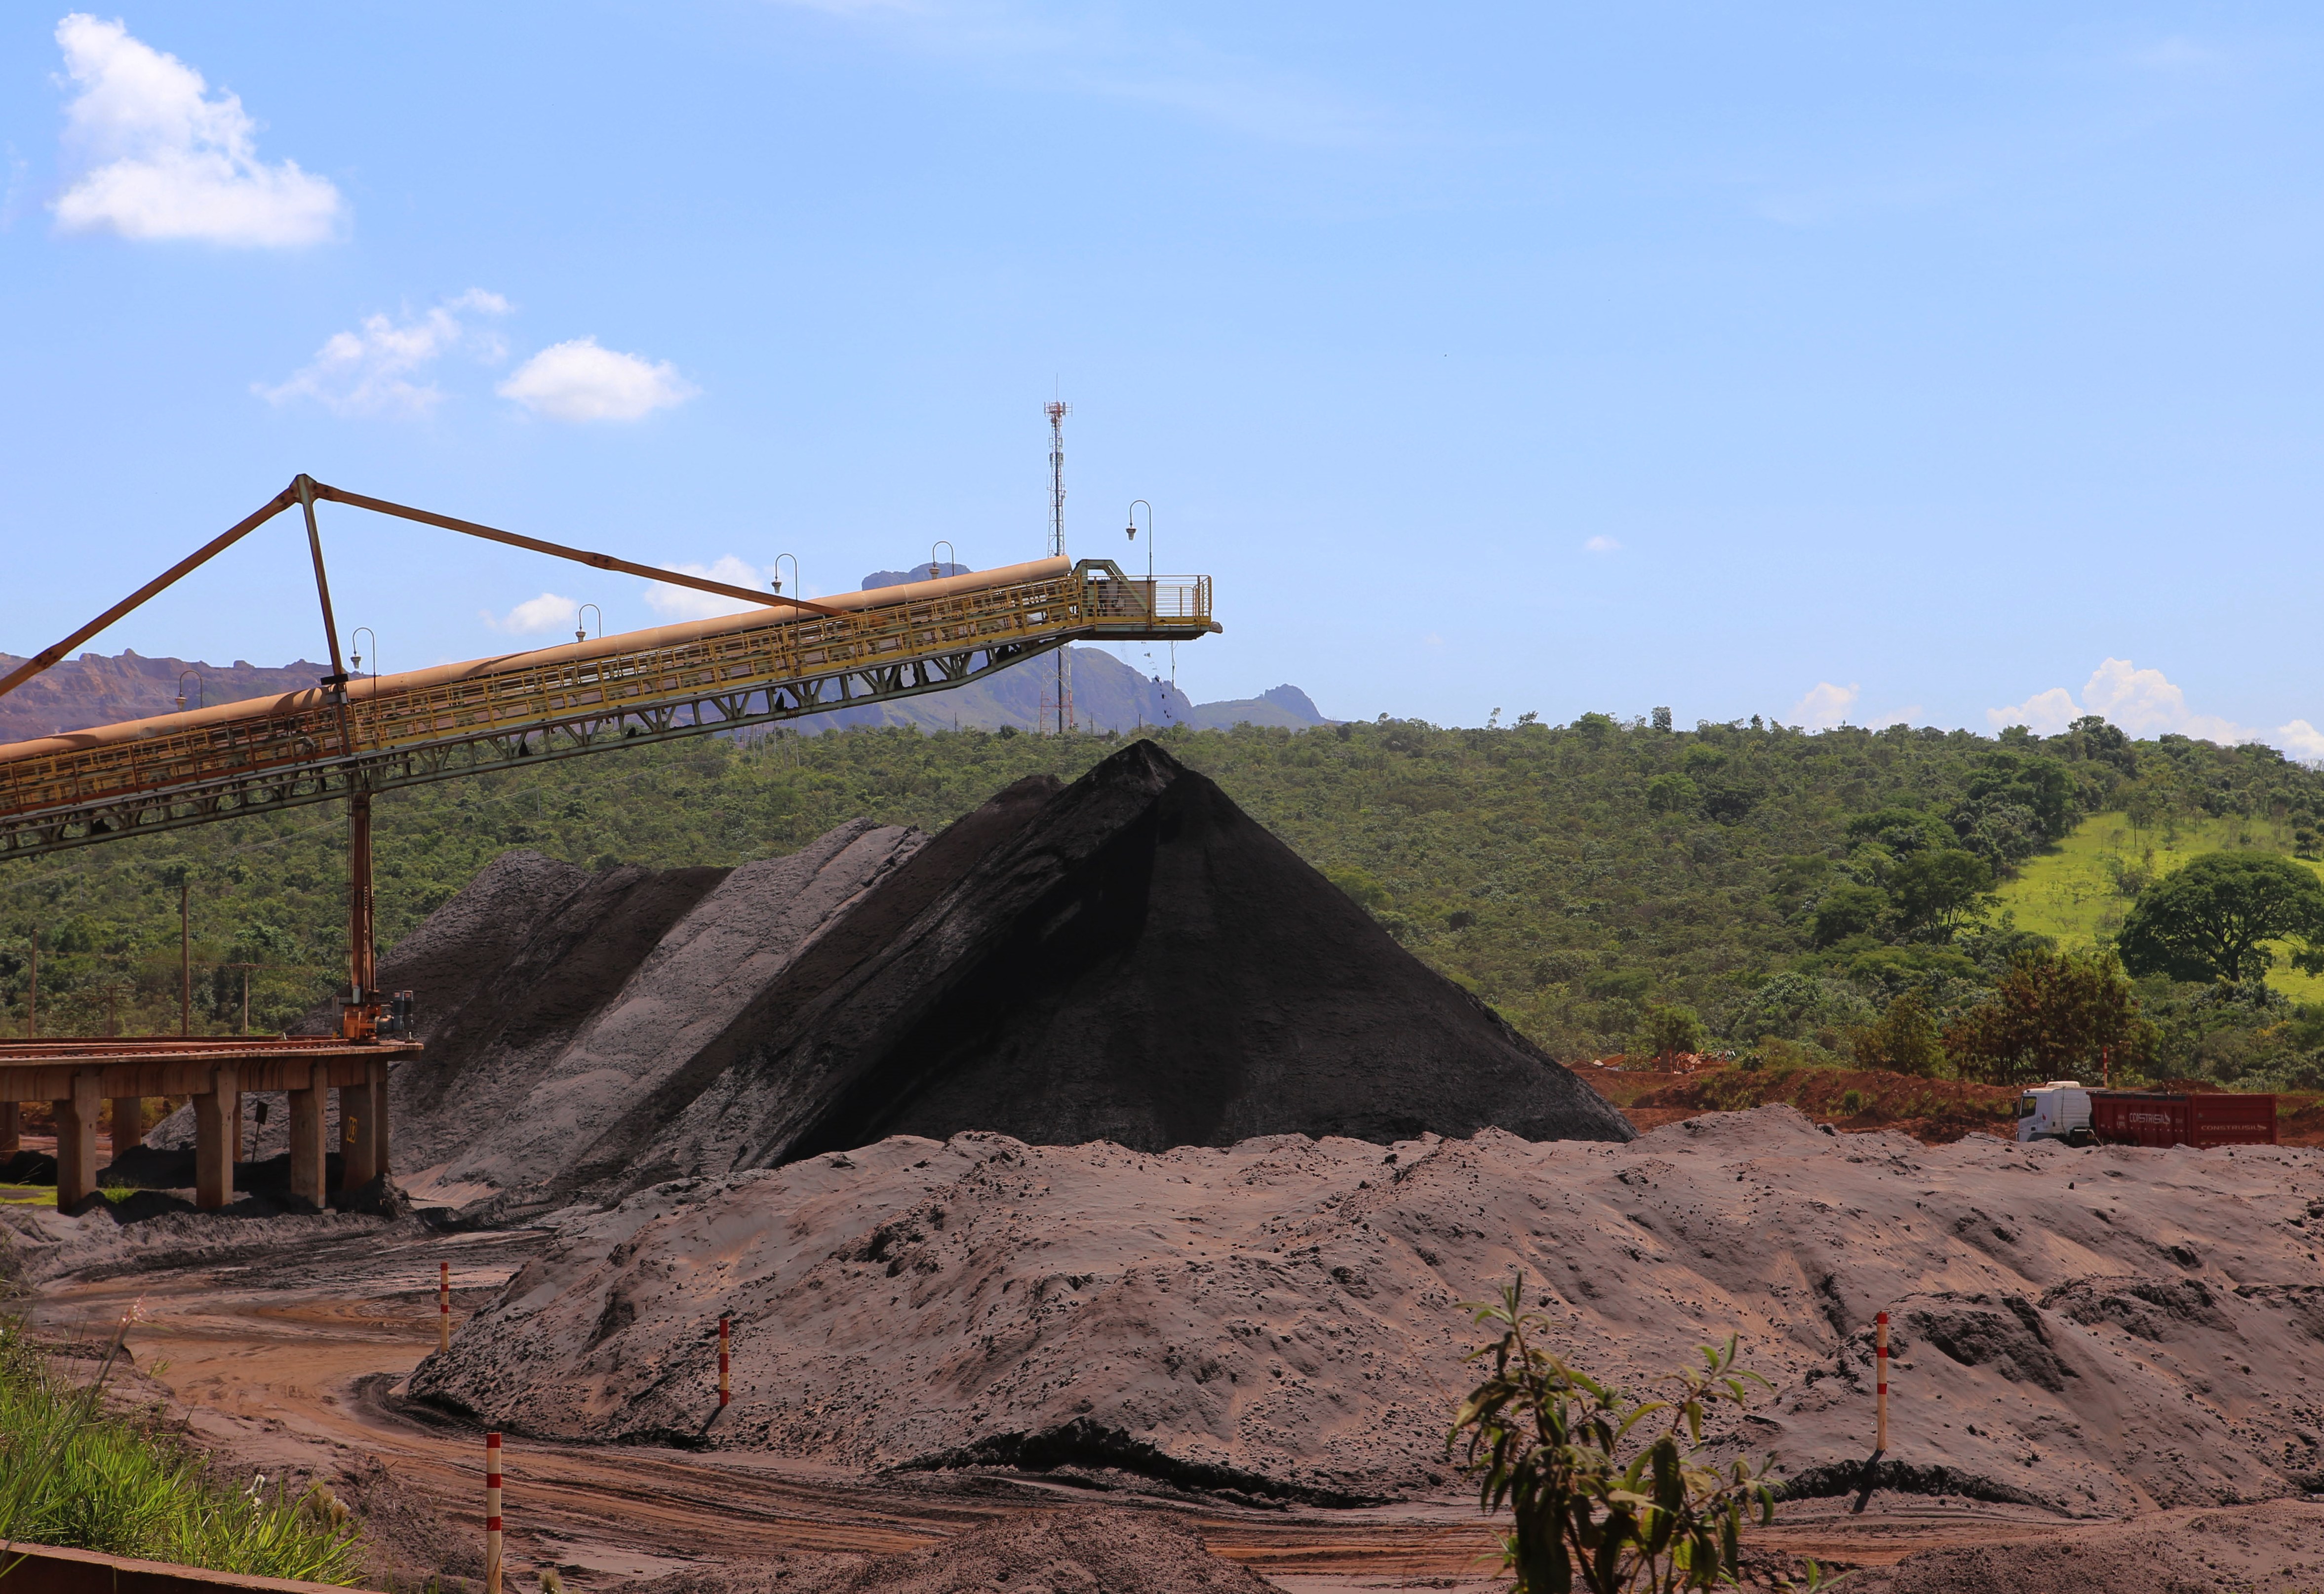 Mineração Usiminas completa dez anos de operações em Itatiaiuçu, após aquisição da J. Mendes